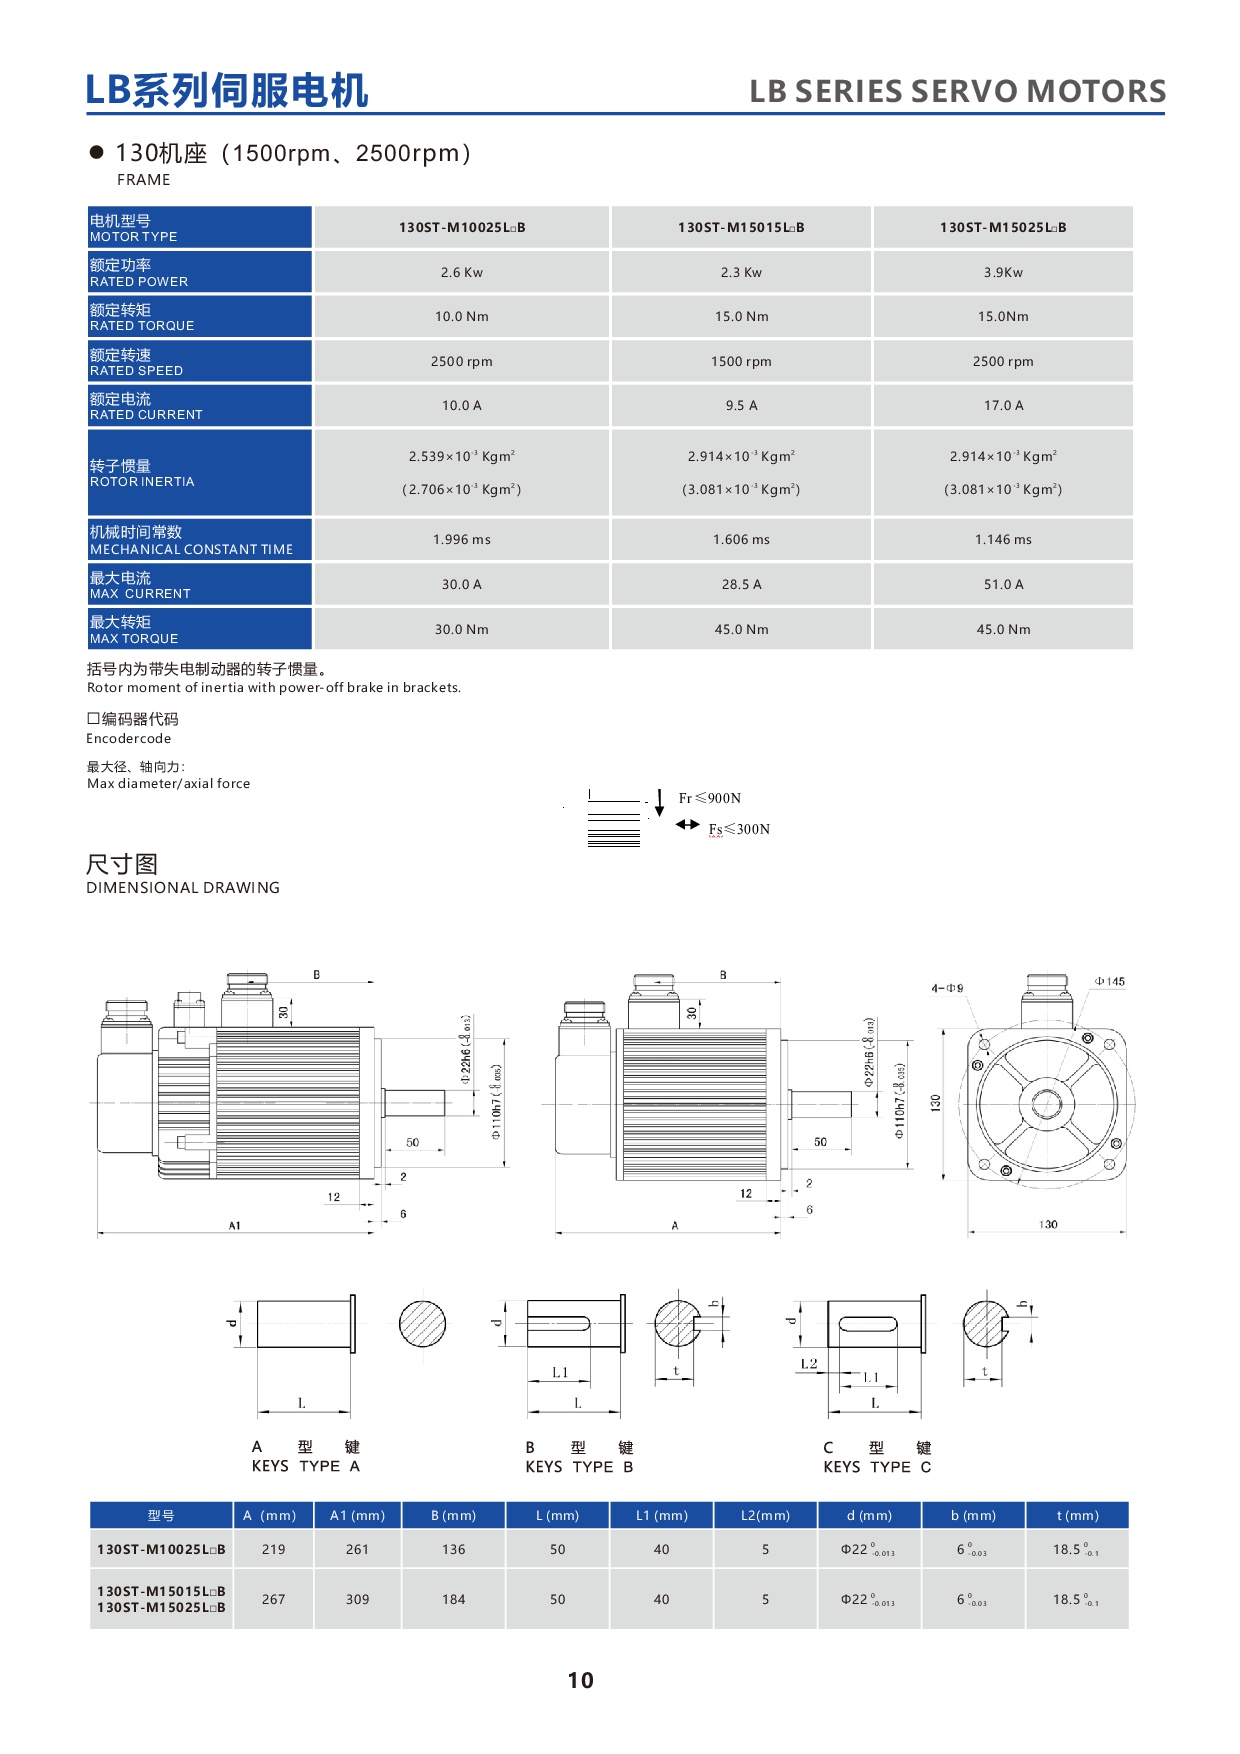 产品特性-8-LBseries130STservomotor